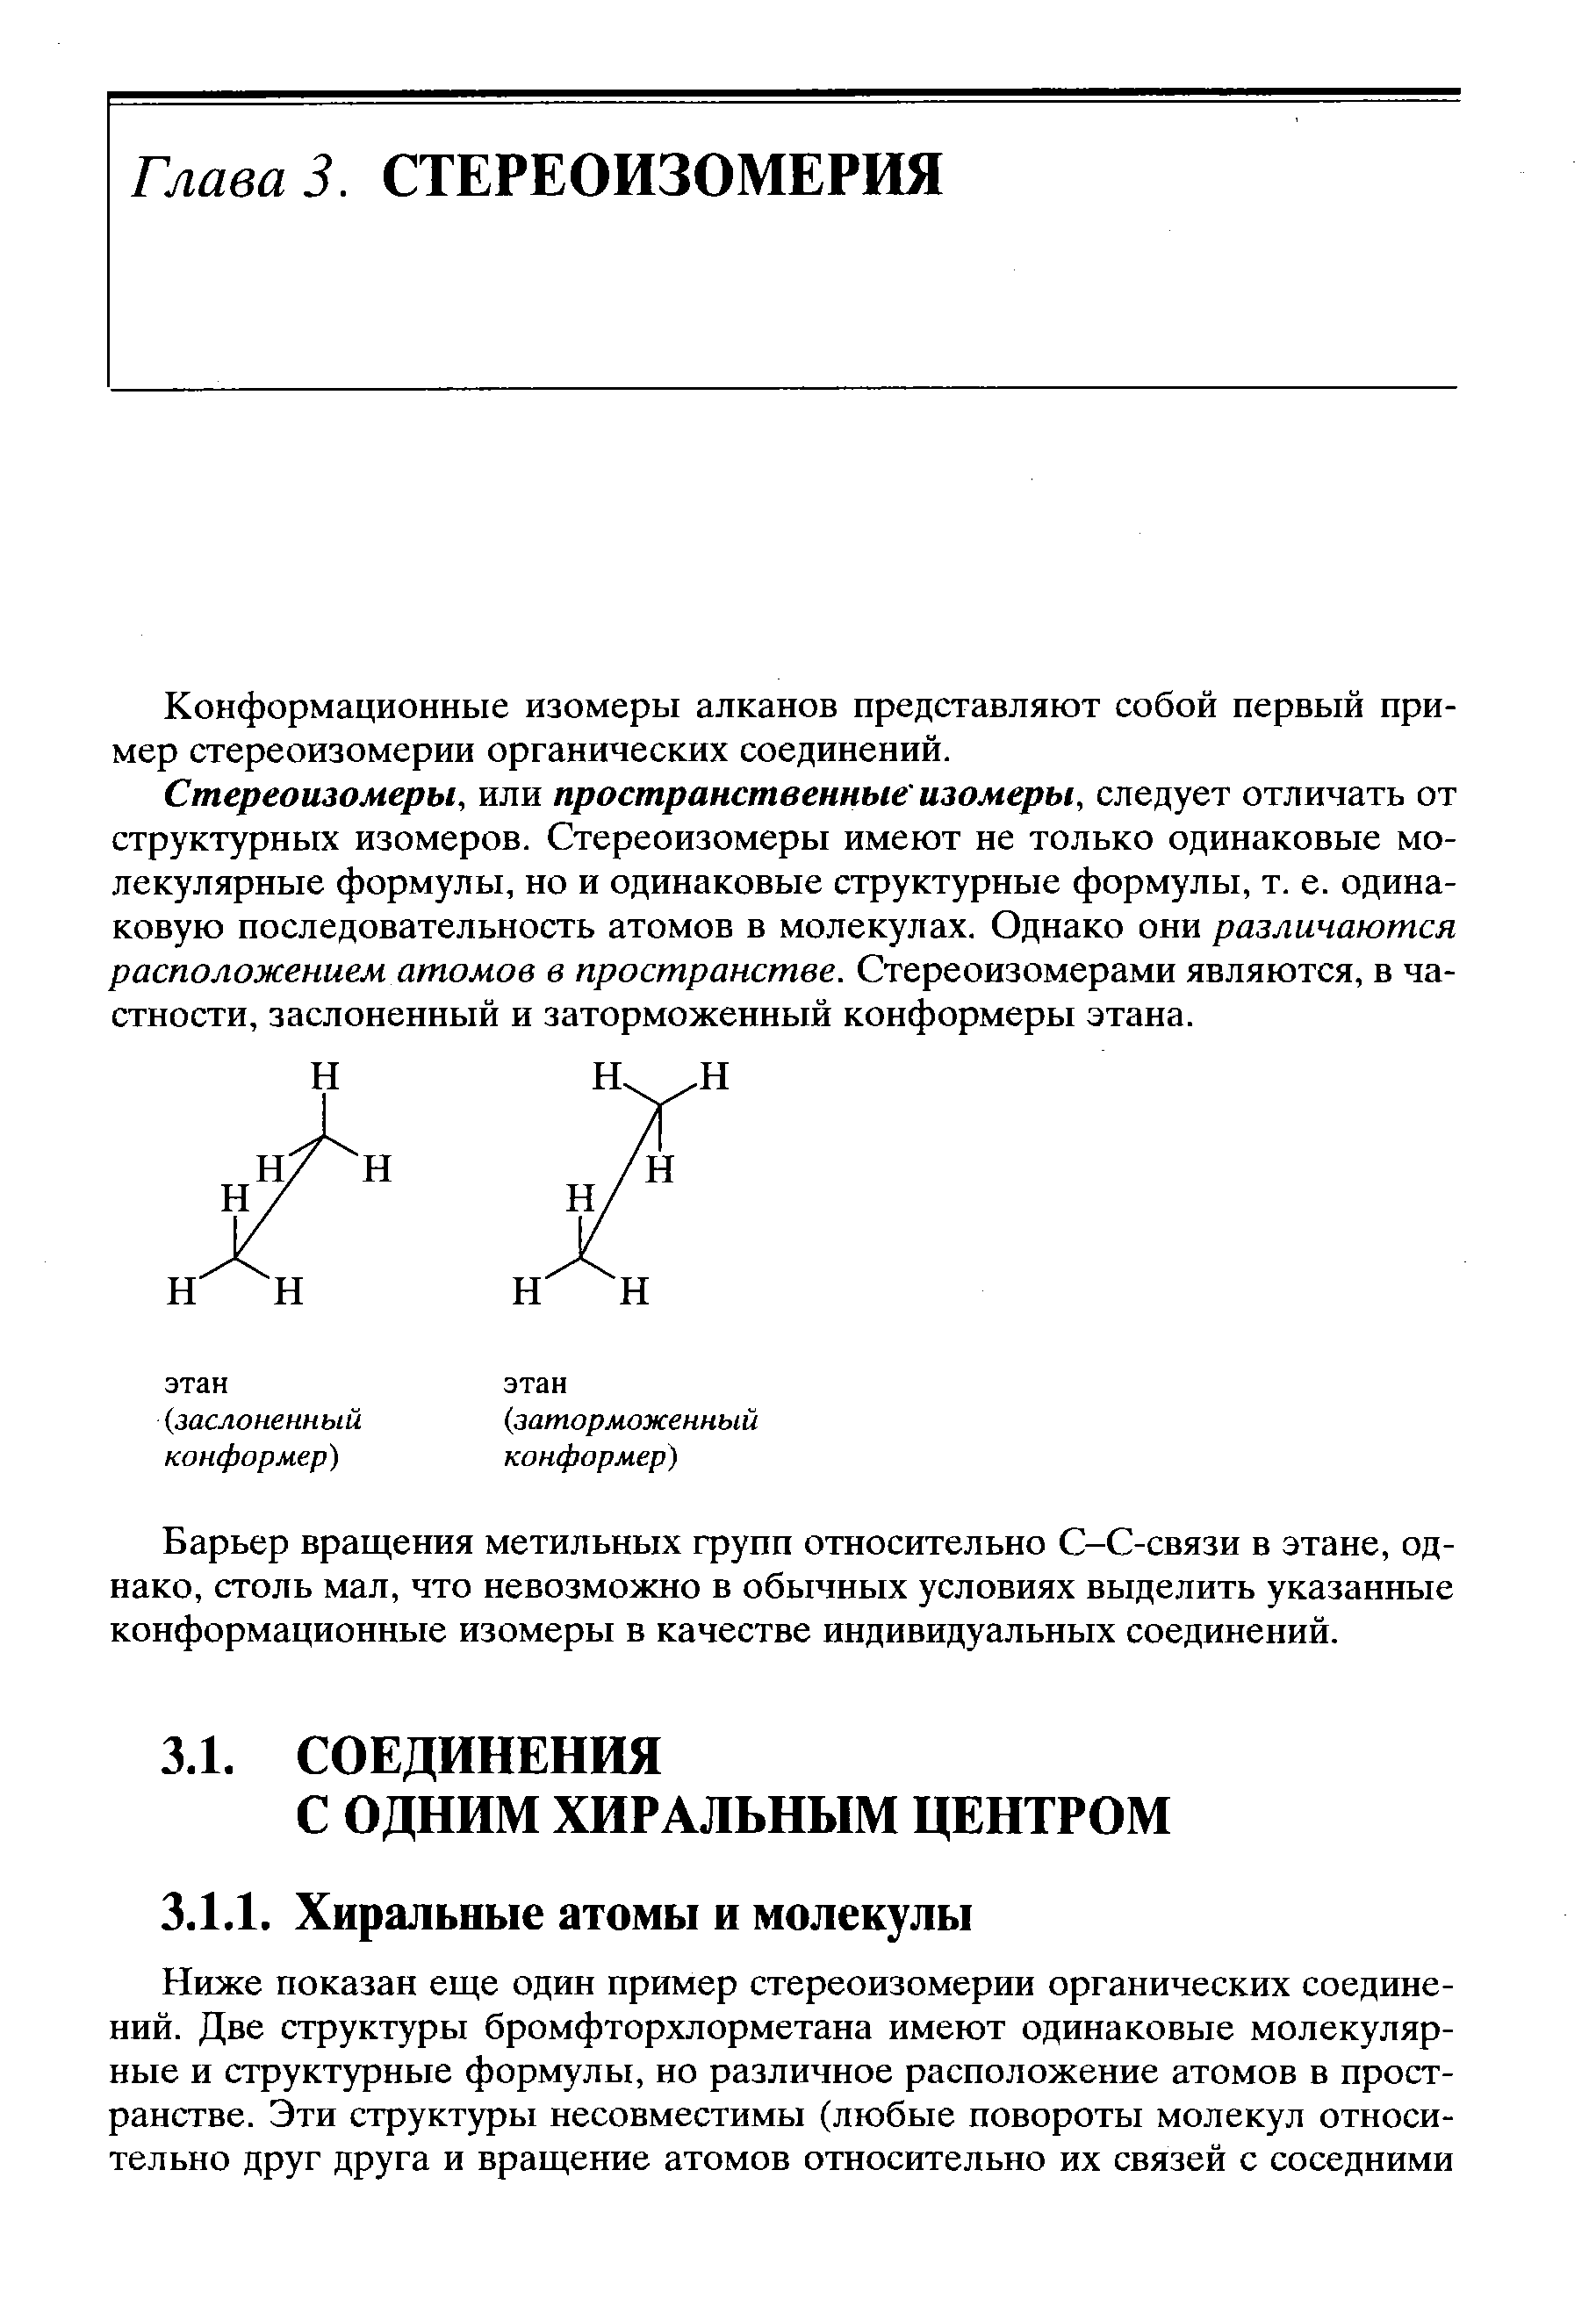 Конформационные изомеры алканов представляют собой первый пример стереоизомерии органических соединений.